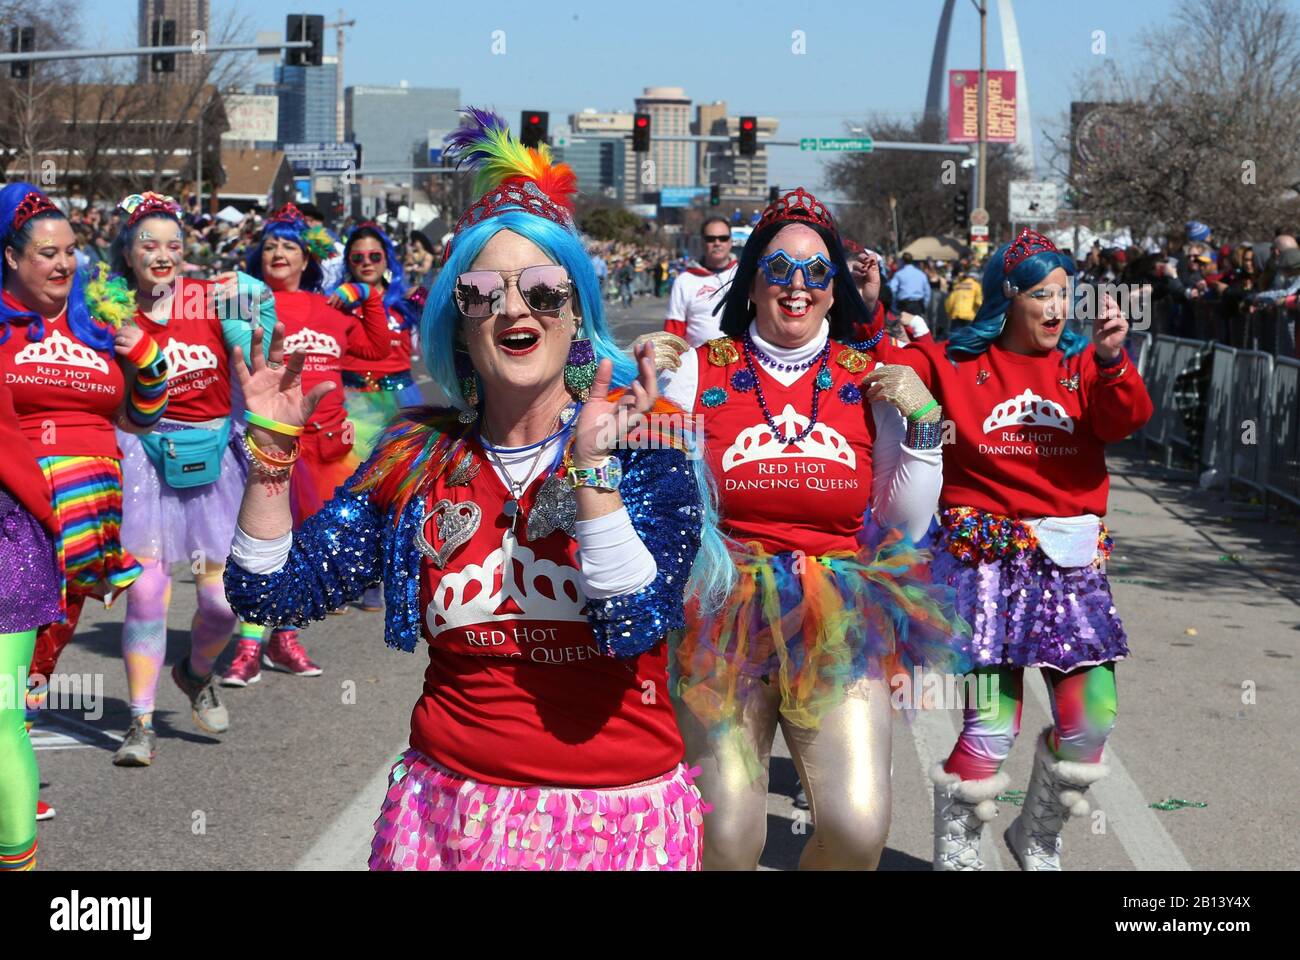 St. Louis, Estados Unidos. 22 de febrero de 2020. Un grupo de danza de Cincinnati, actúa durante el desfile de St. Louis Mardi Gras en St. Louis el sábado, 22 de febrero de 2020. Foto de Bill Greenblatt/UPI crédito: UPI/Alamy Live News Foto de stock